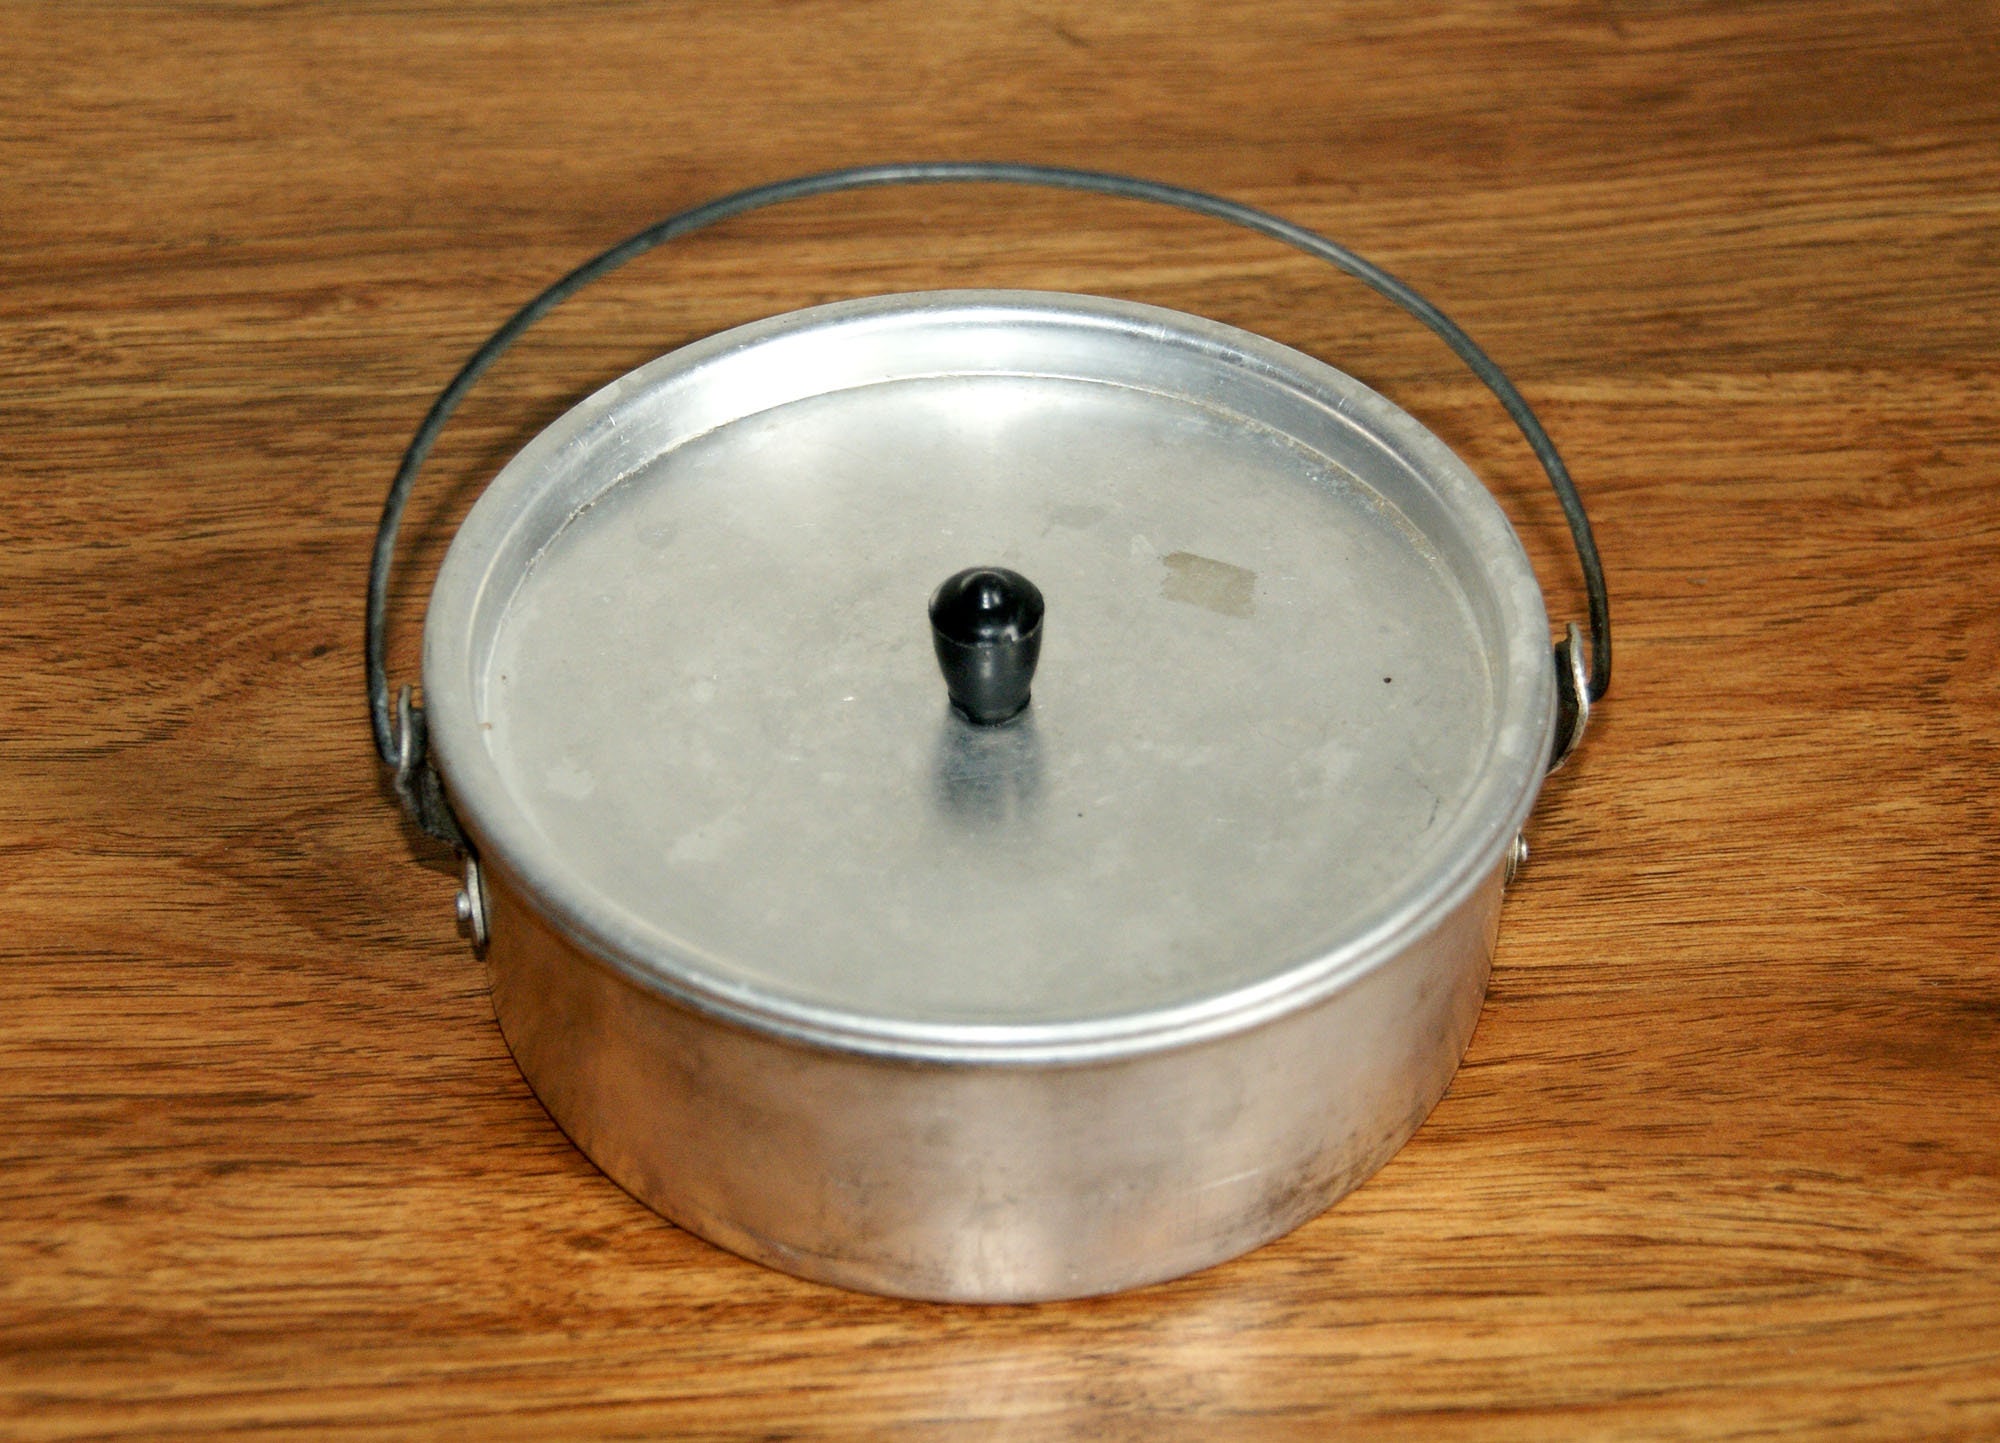 Belgique Champagne Aluminum 3-Qt. Nonstick Soup Pot with Lid